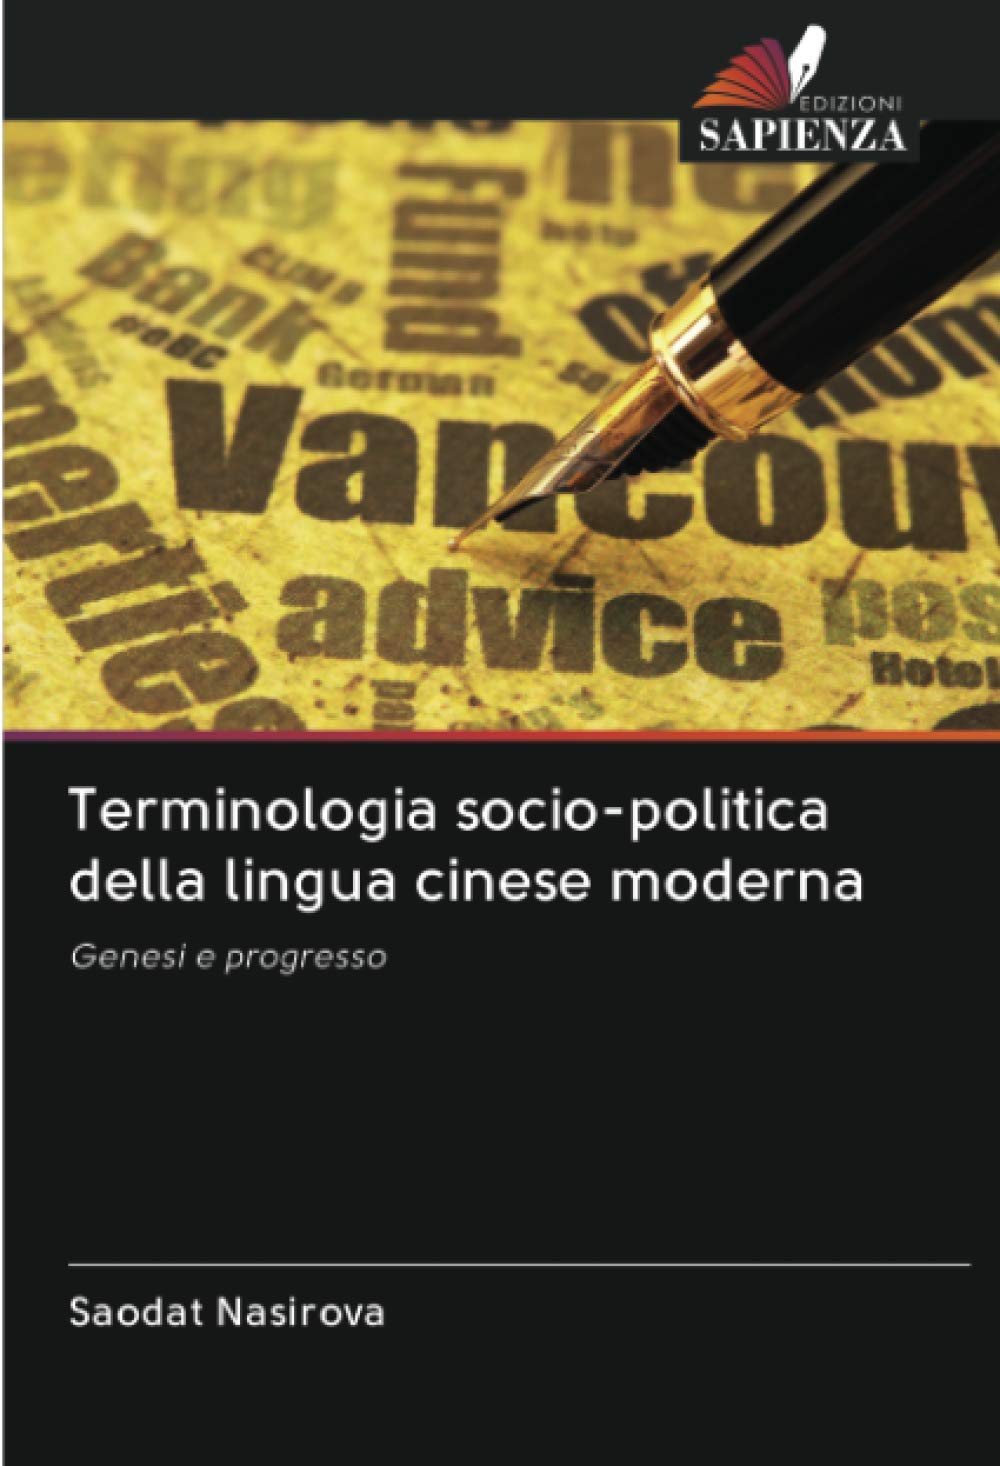 Terminologia socio-politica della lingua cinese moderna